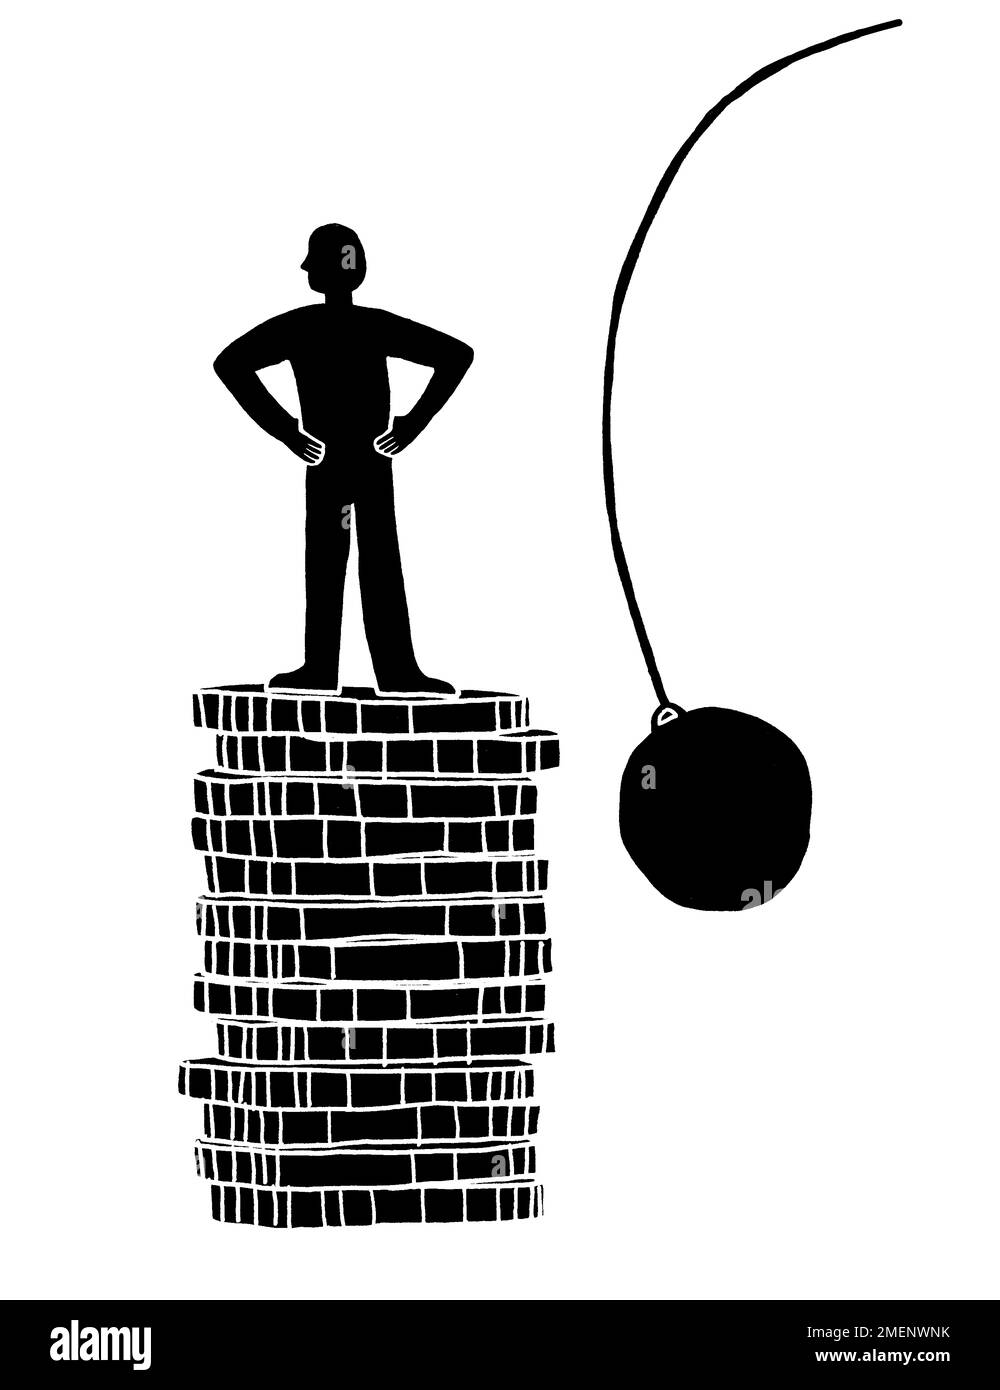 Immagine in bianco e nero di un uomo in piedi su un mucchio di monete con una palla rovinante a lato Foto Stock